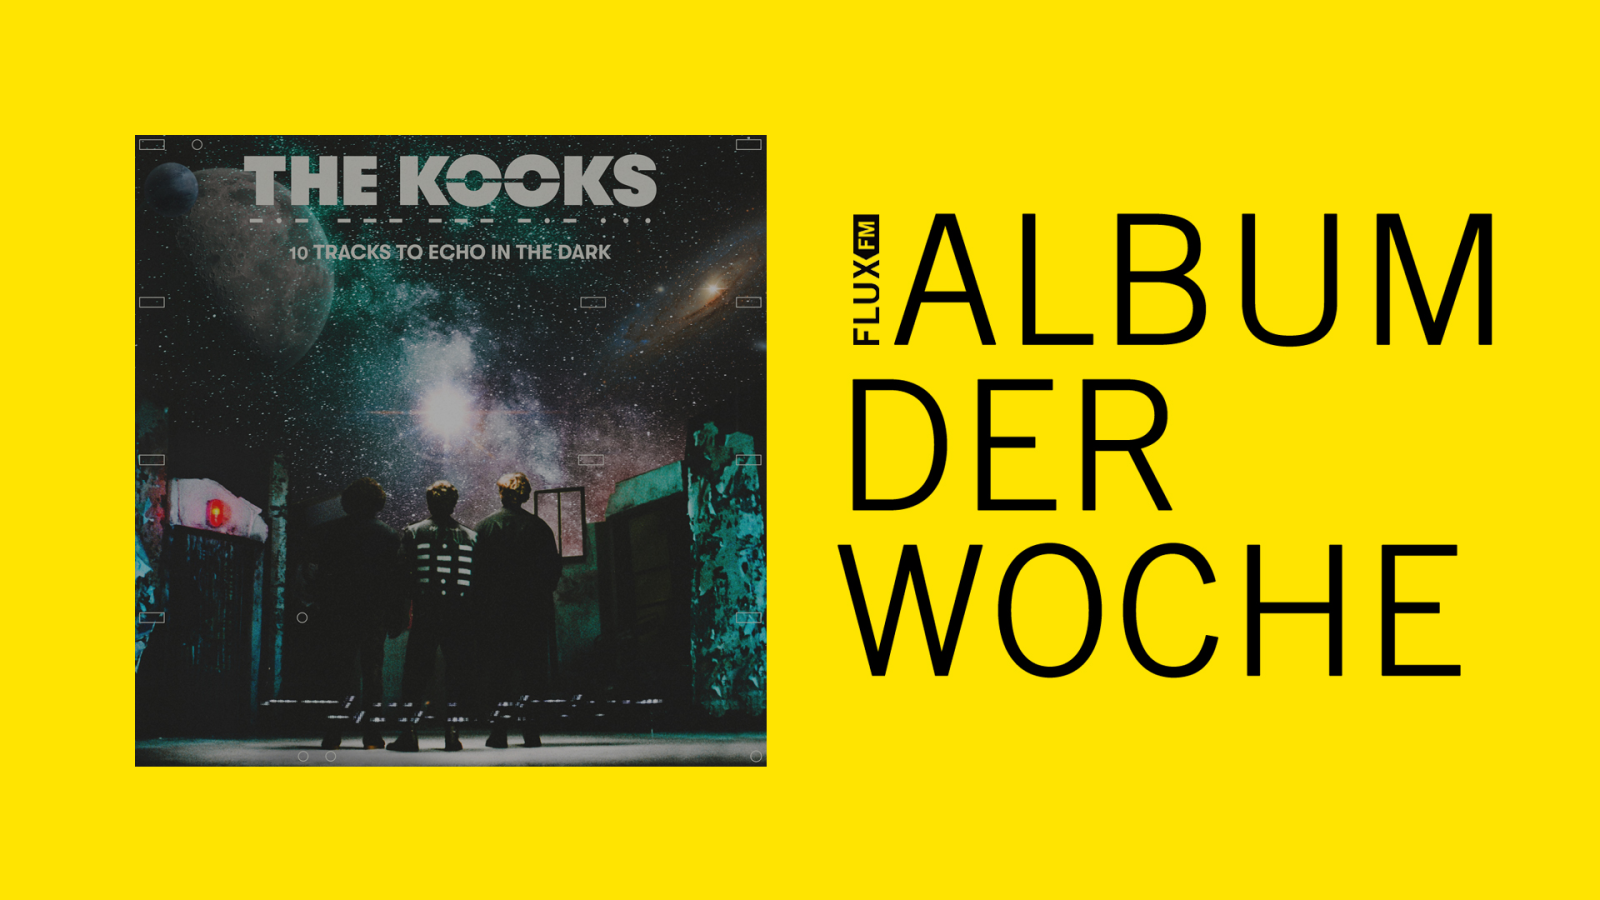 The Kooks - "10 Tracks To Echo In The Dark" | Album der Woche